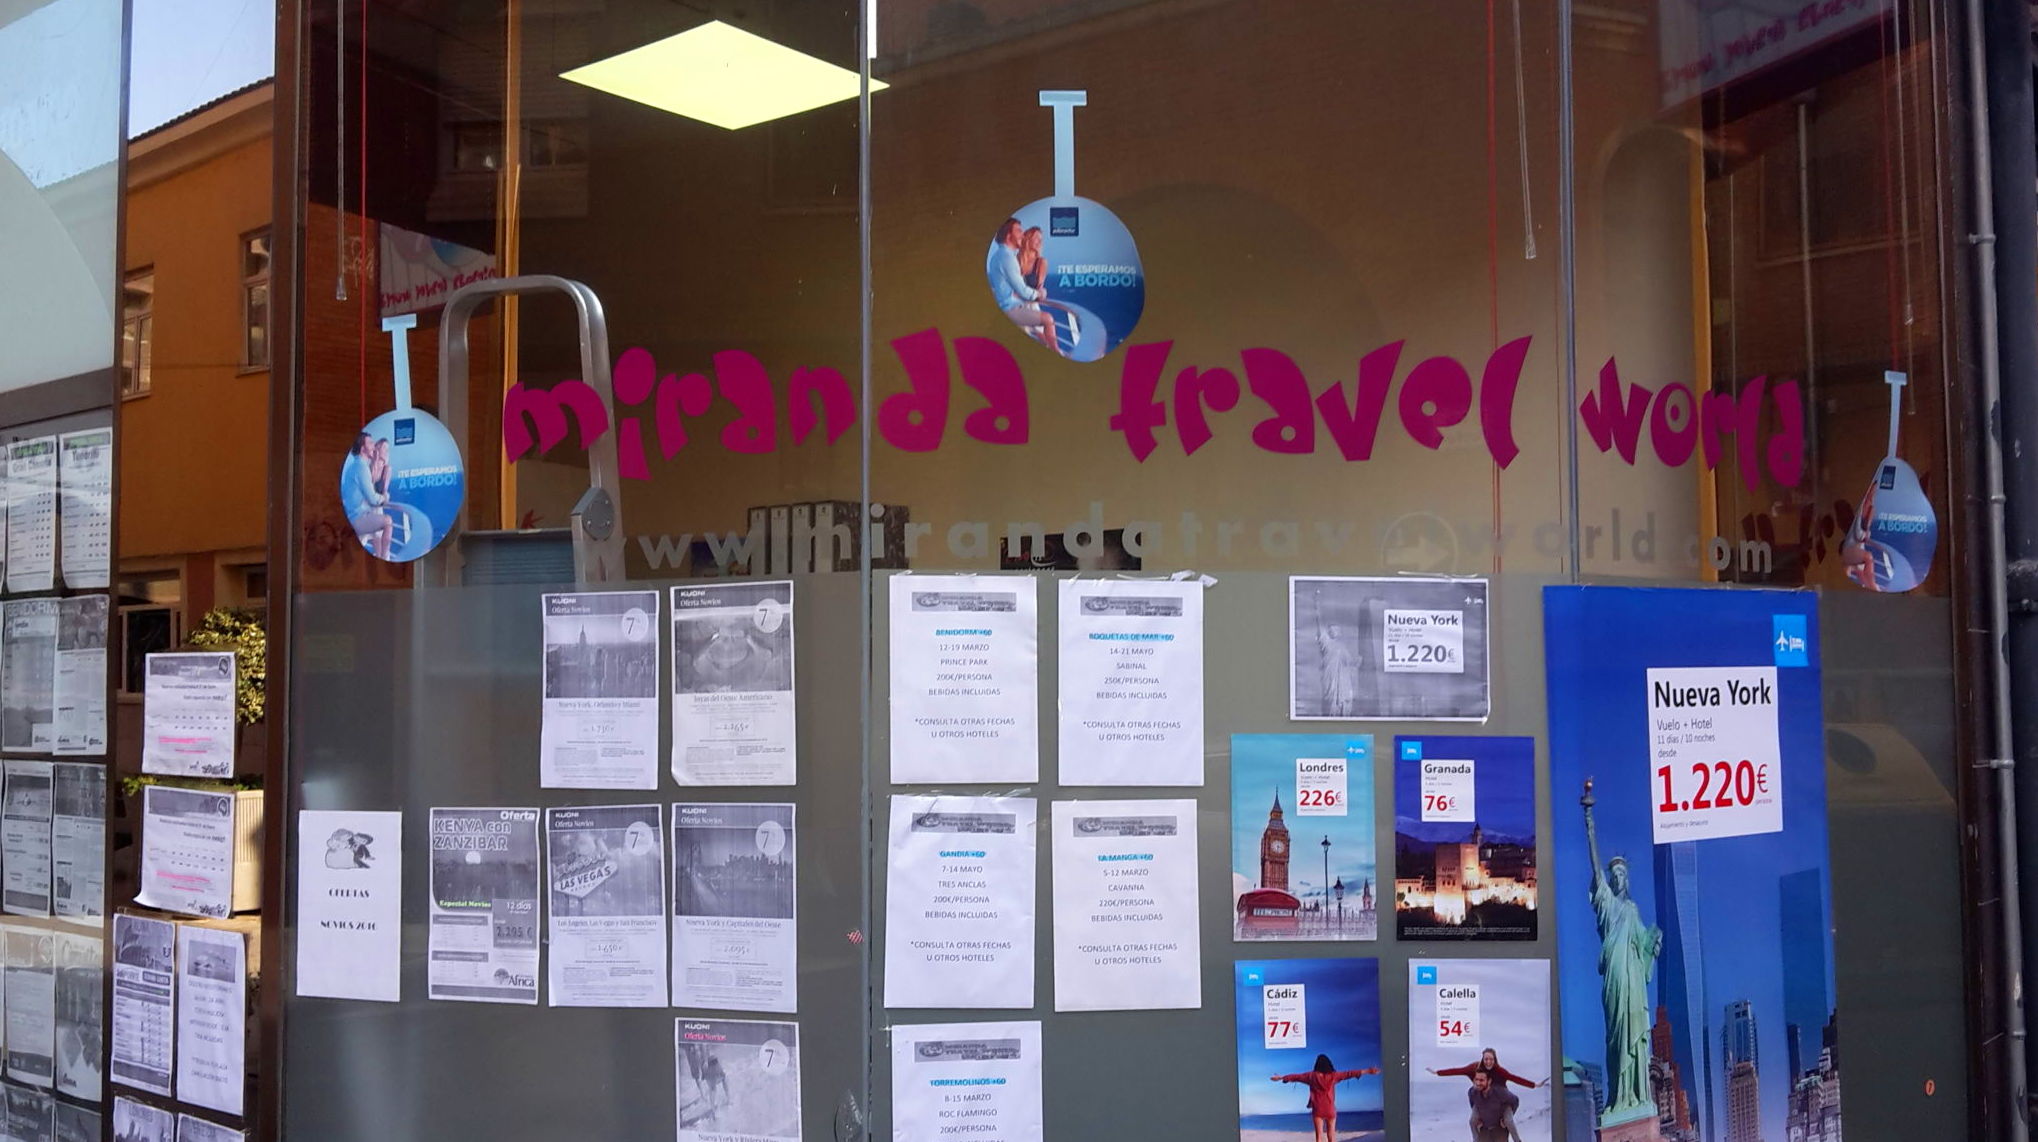 Foto 17 de Agencia de viajes en Miranda de Ebro Miranda Travel Word